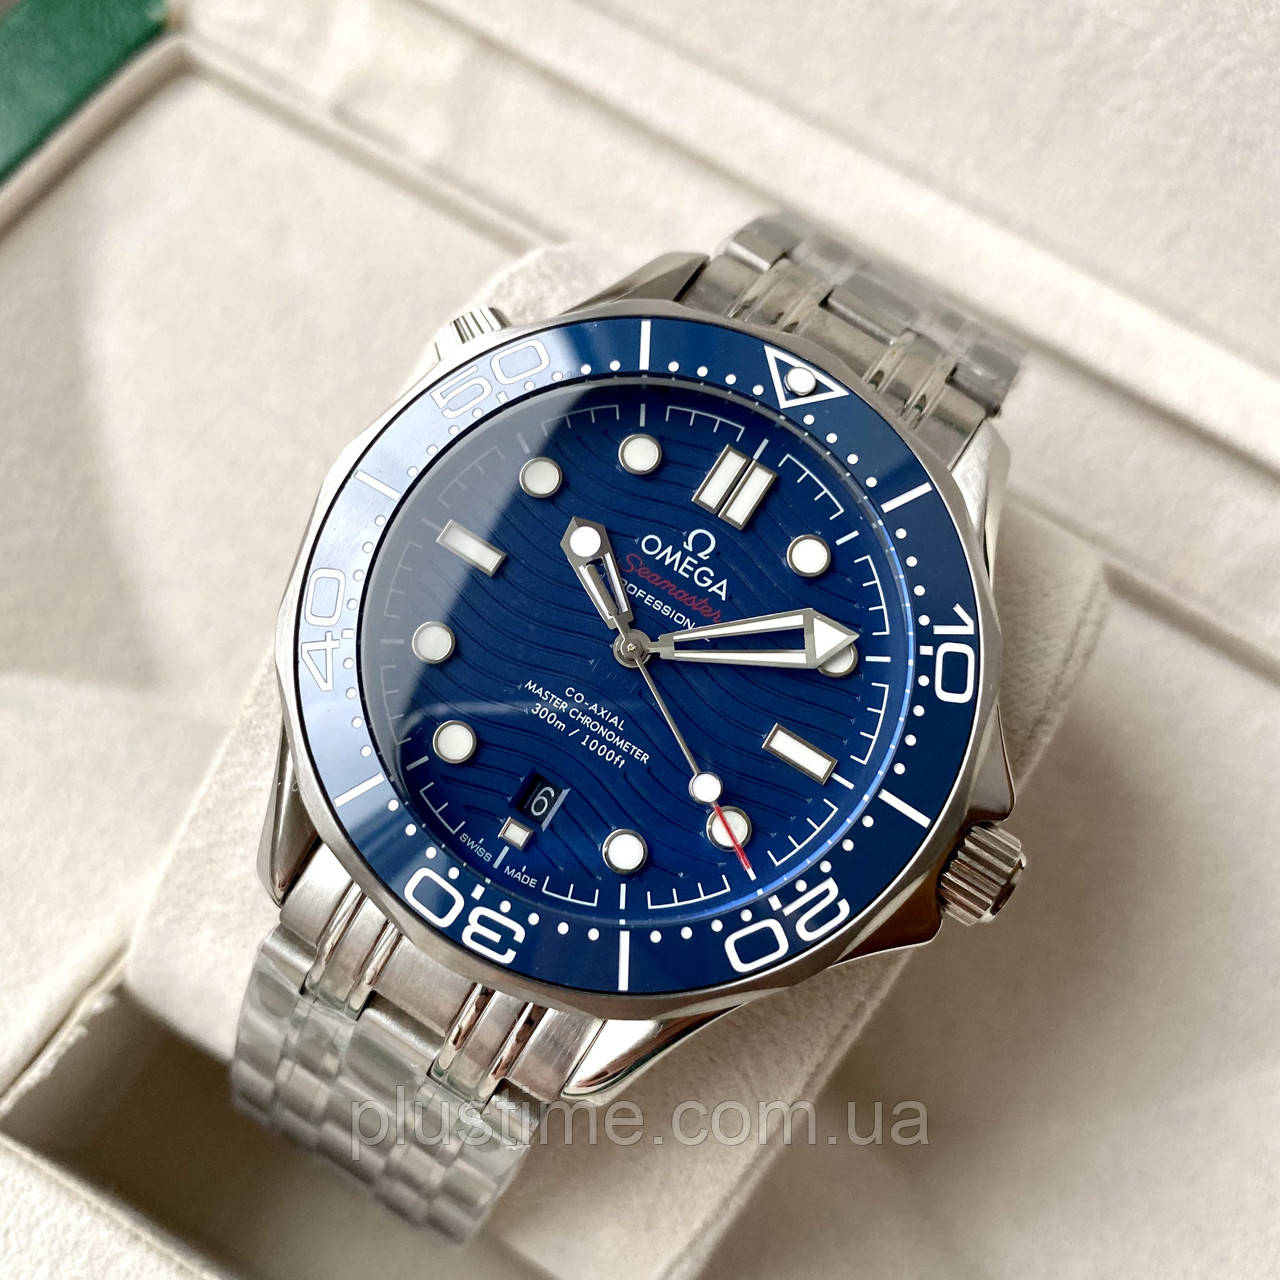 Omega Seamaster Professional Silver Blue AAA — чоловічий наручний годинник механічний з автопідзаводом